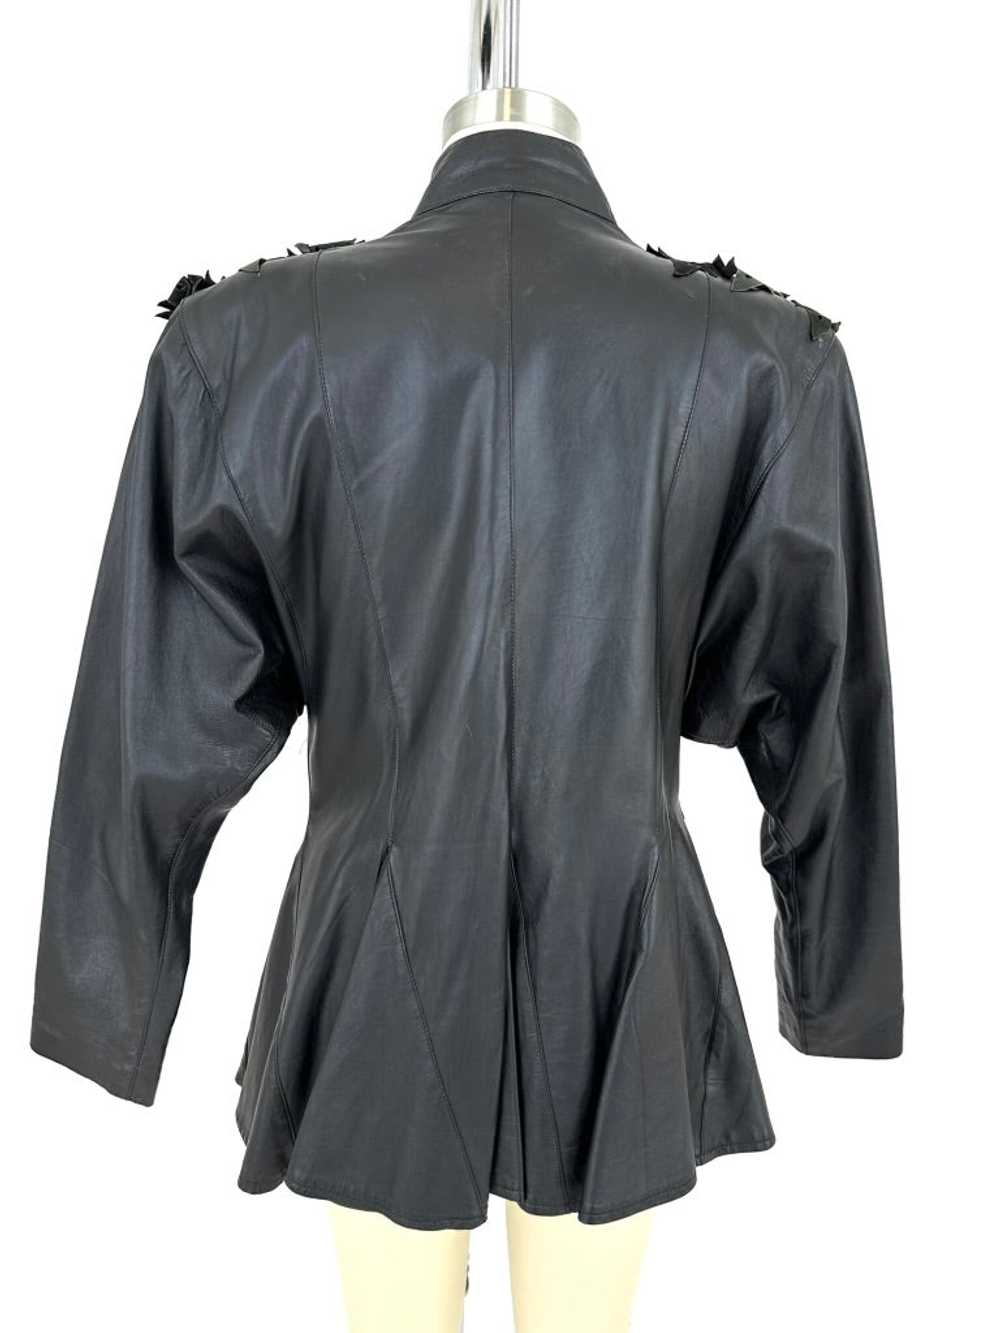 80s Avant Garde Leather Jacket - image 4